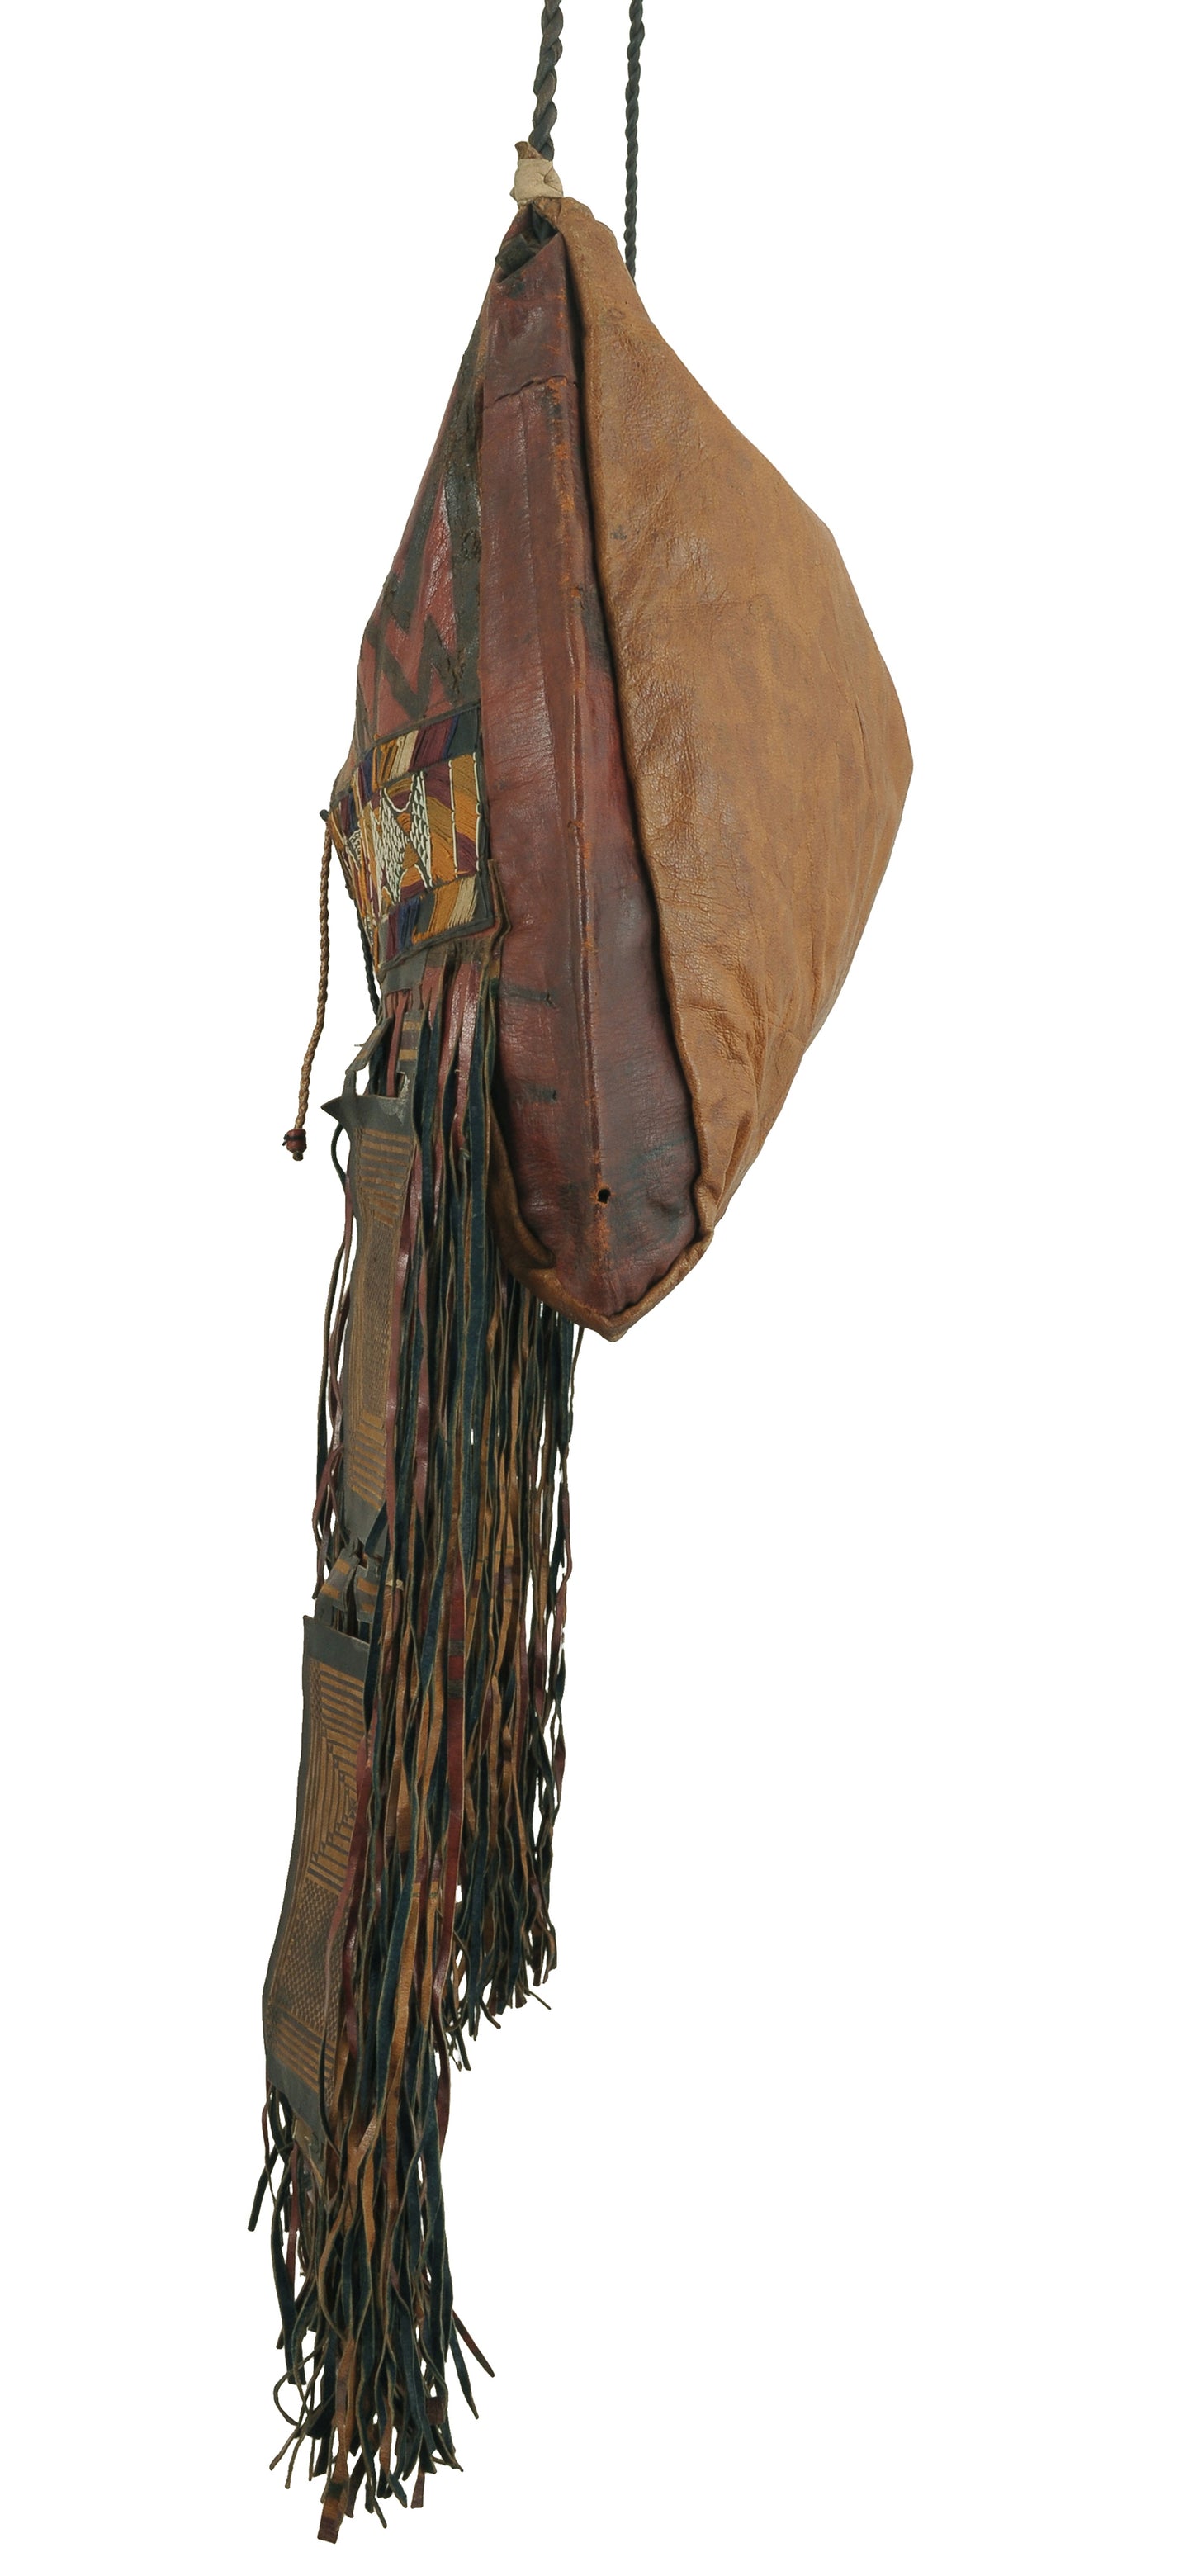 African Art Tuareg leather camel bag from Niger Sahara Bedouin